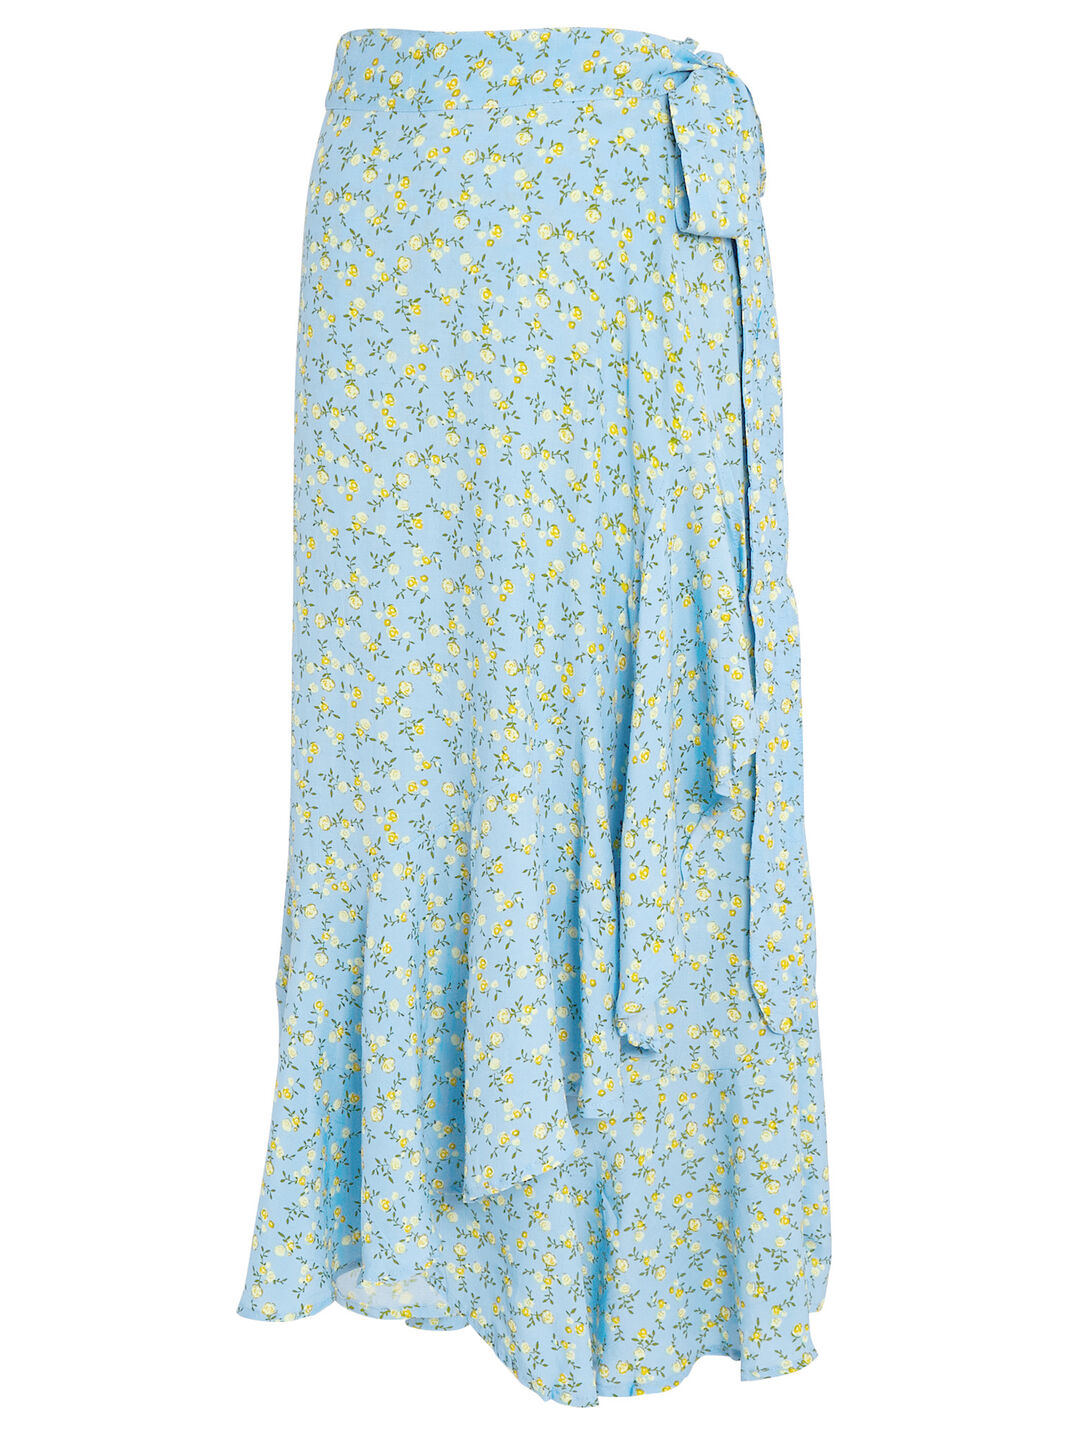 FAITHFULL THE BRAND Aubrie Floral Wrap Skirt | INTERMIX® | Röcke